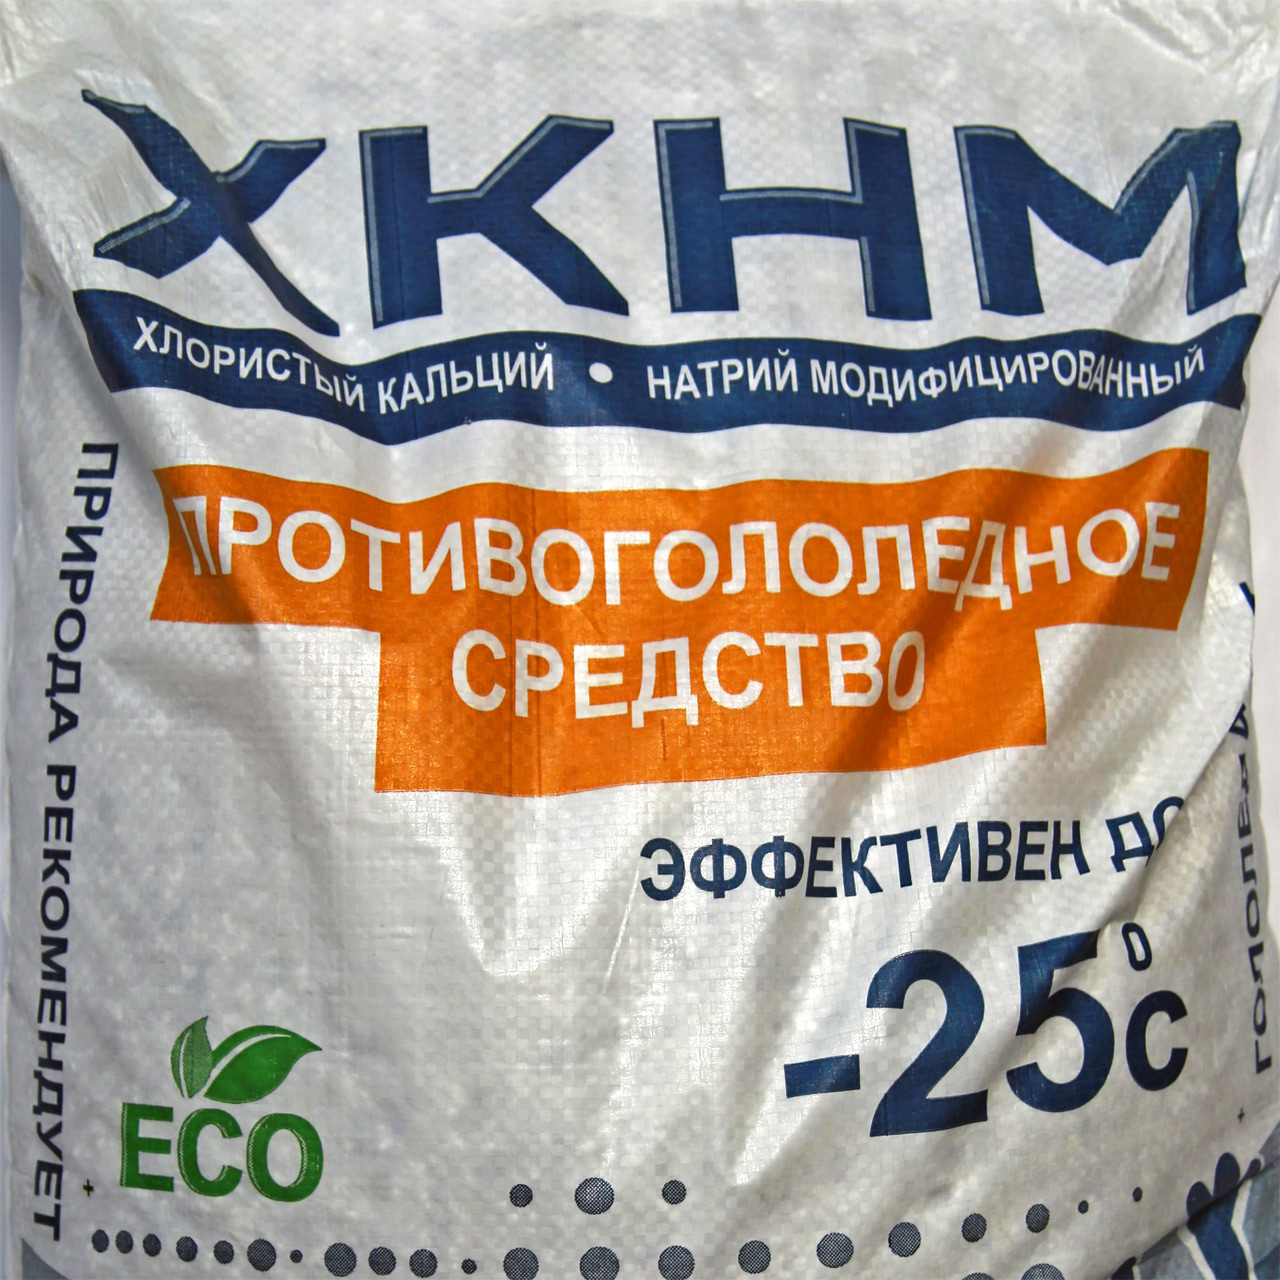 ХКНМ - хлористый кальций натрий модифицированный - Красноярск